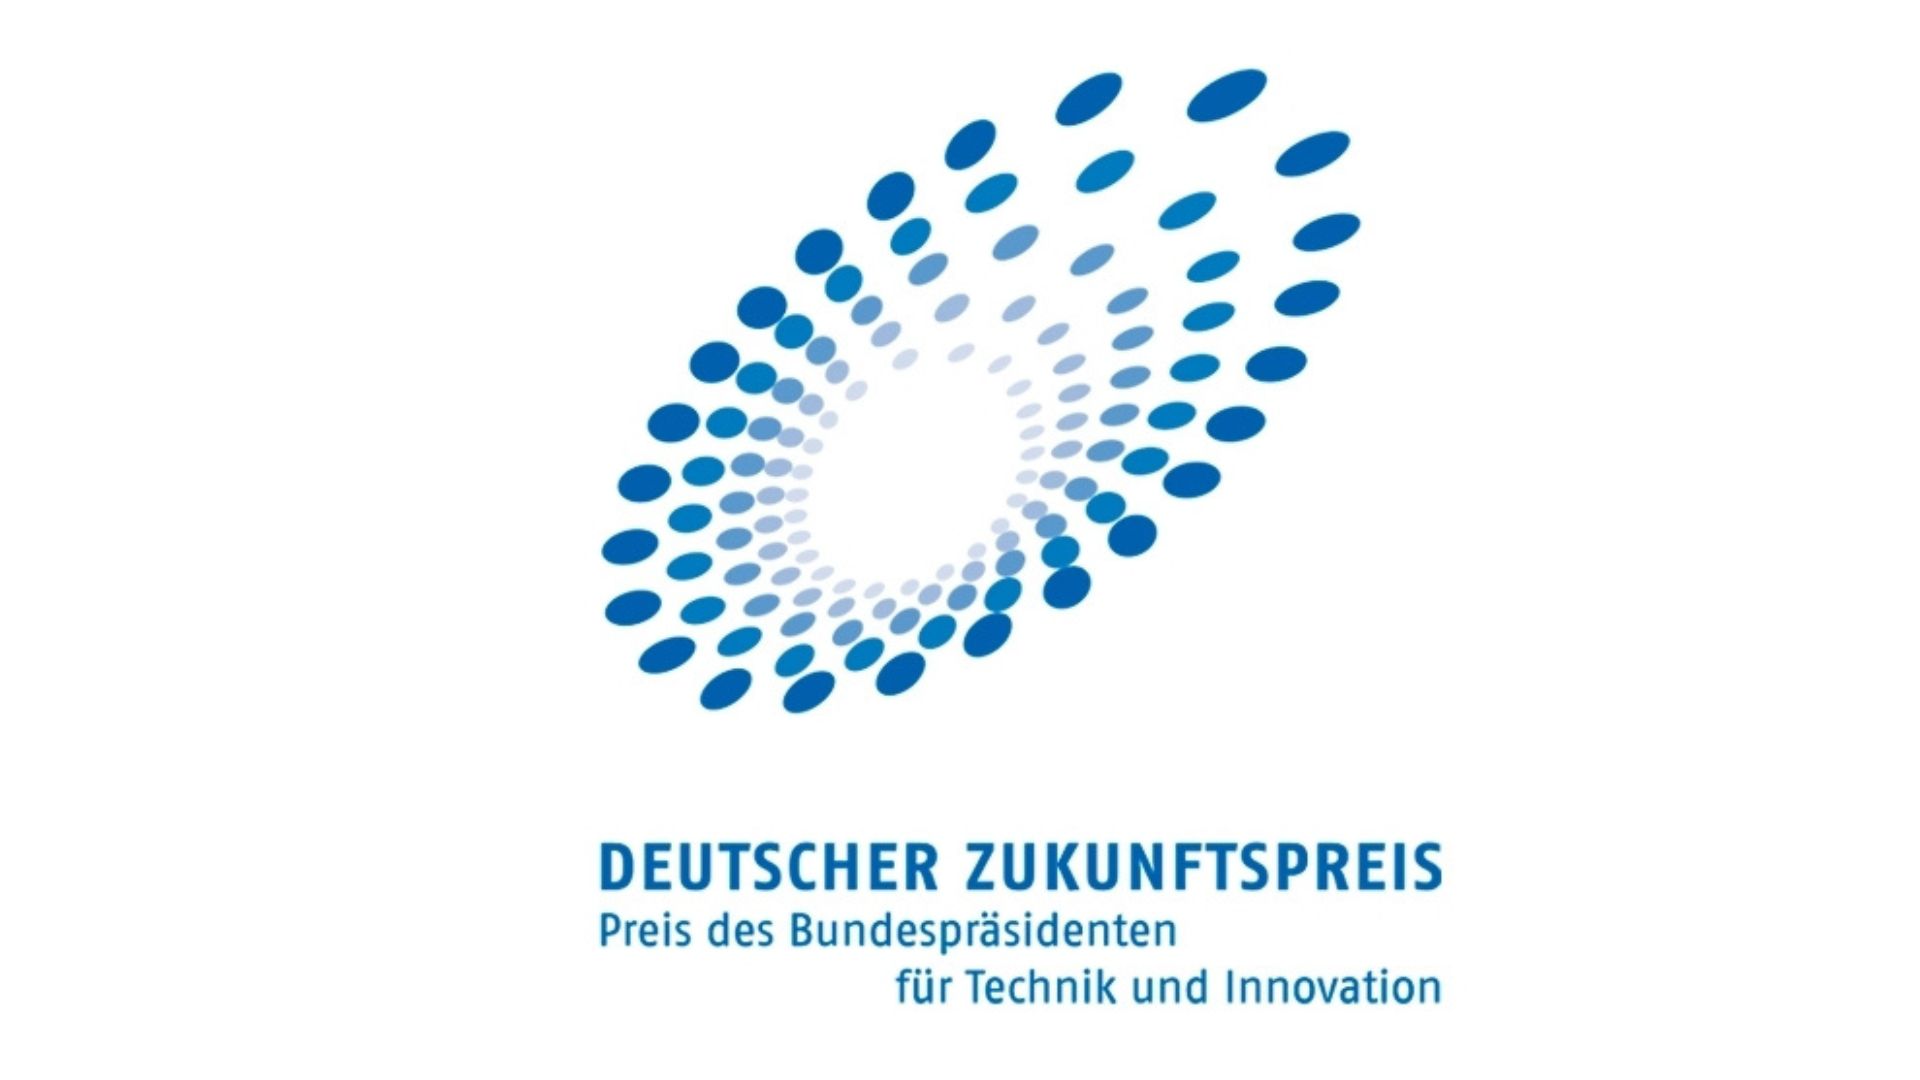 2020 und 2022 ausgezeichnet mit dem Deutschen Zukunftspreis